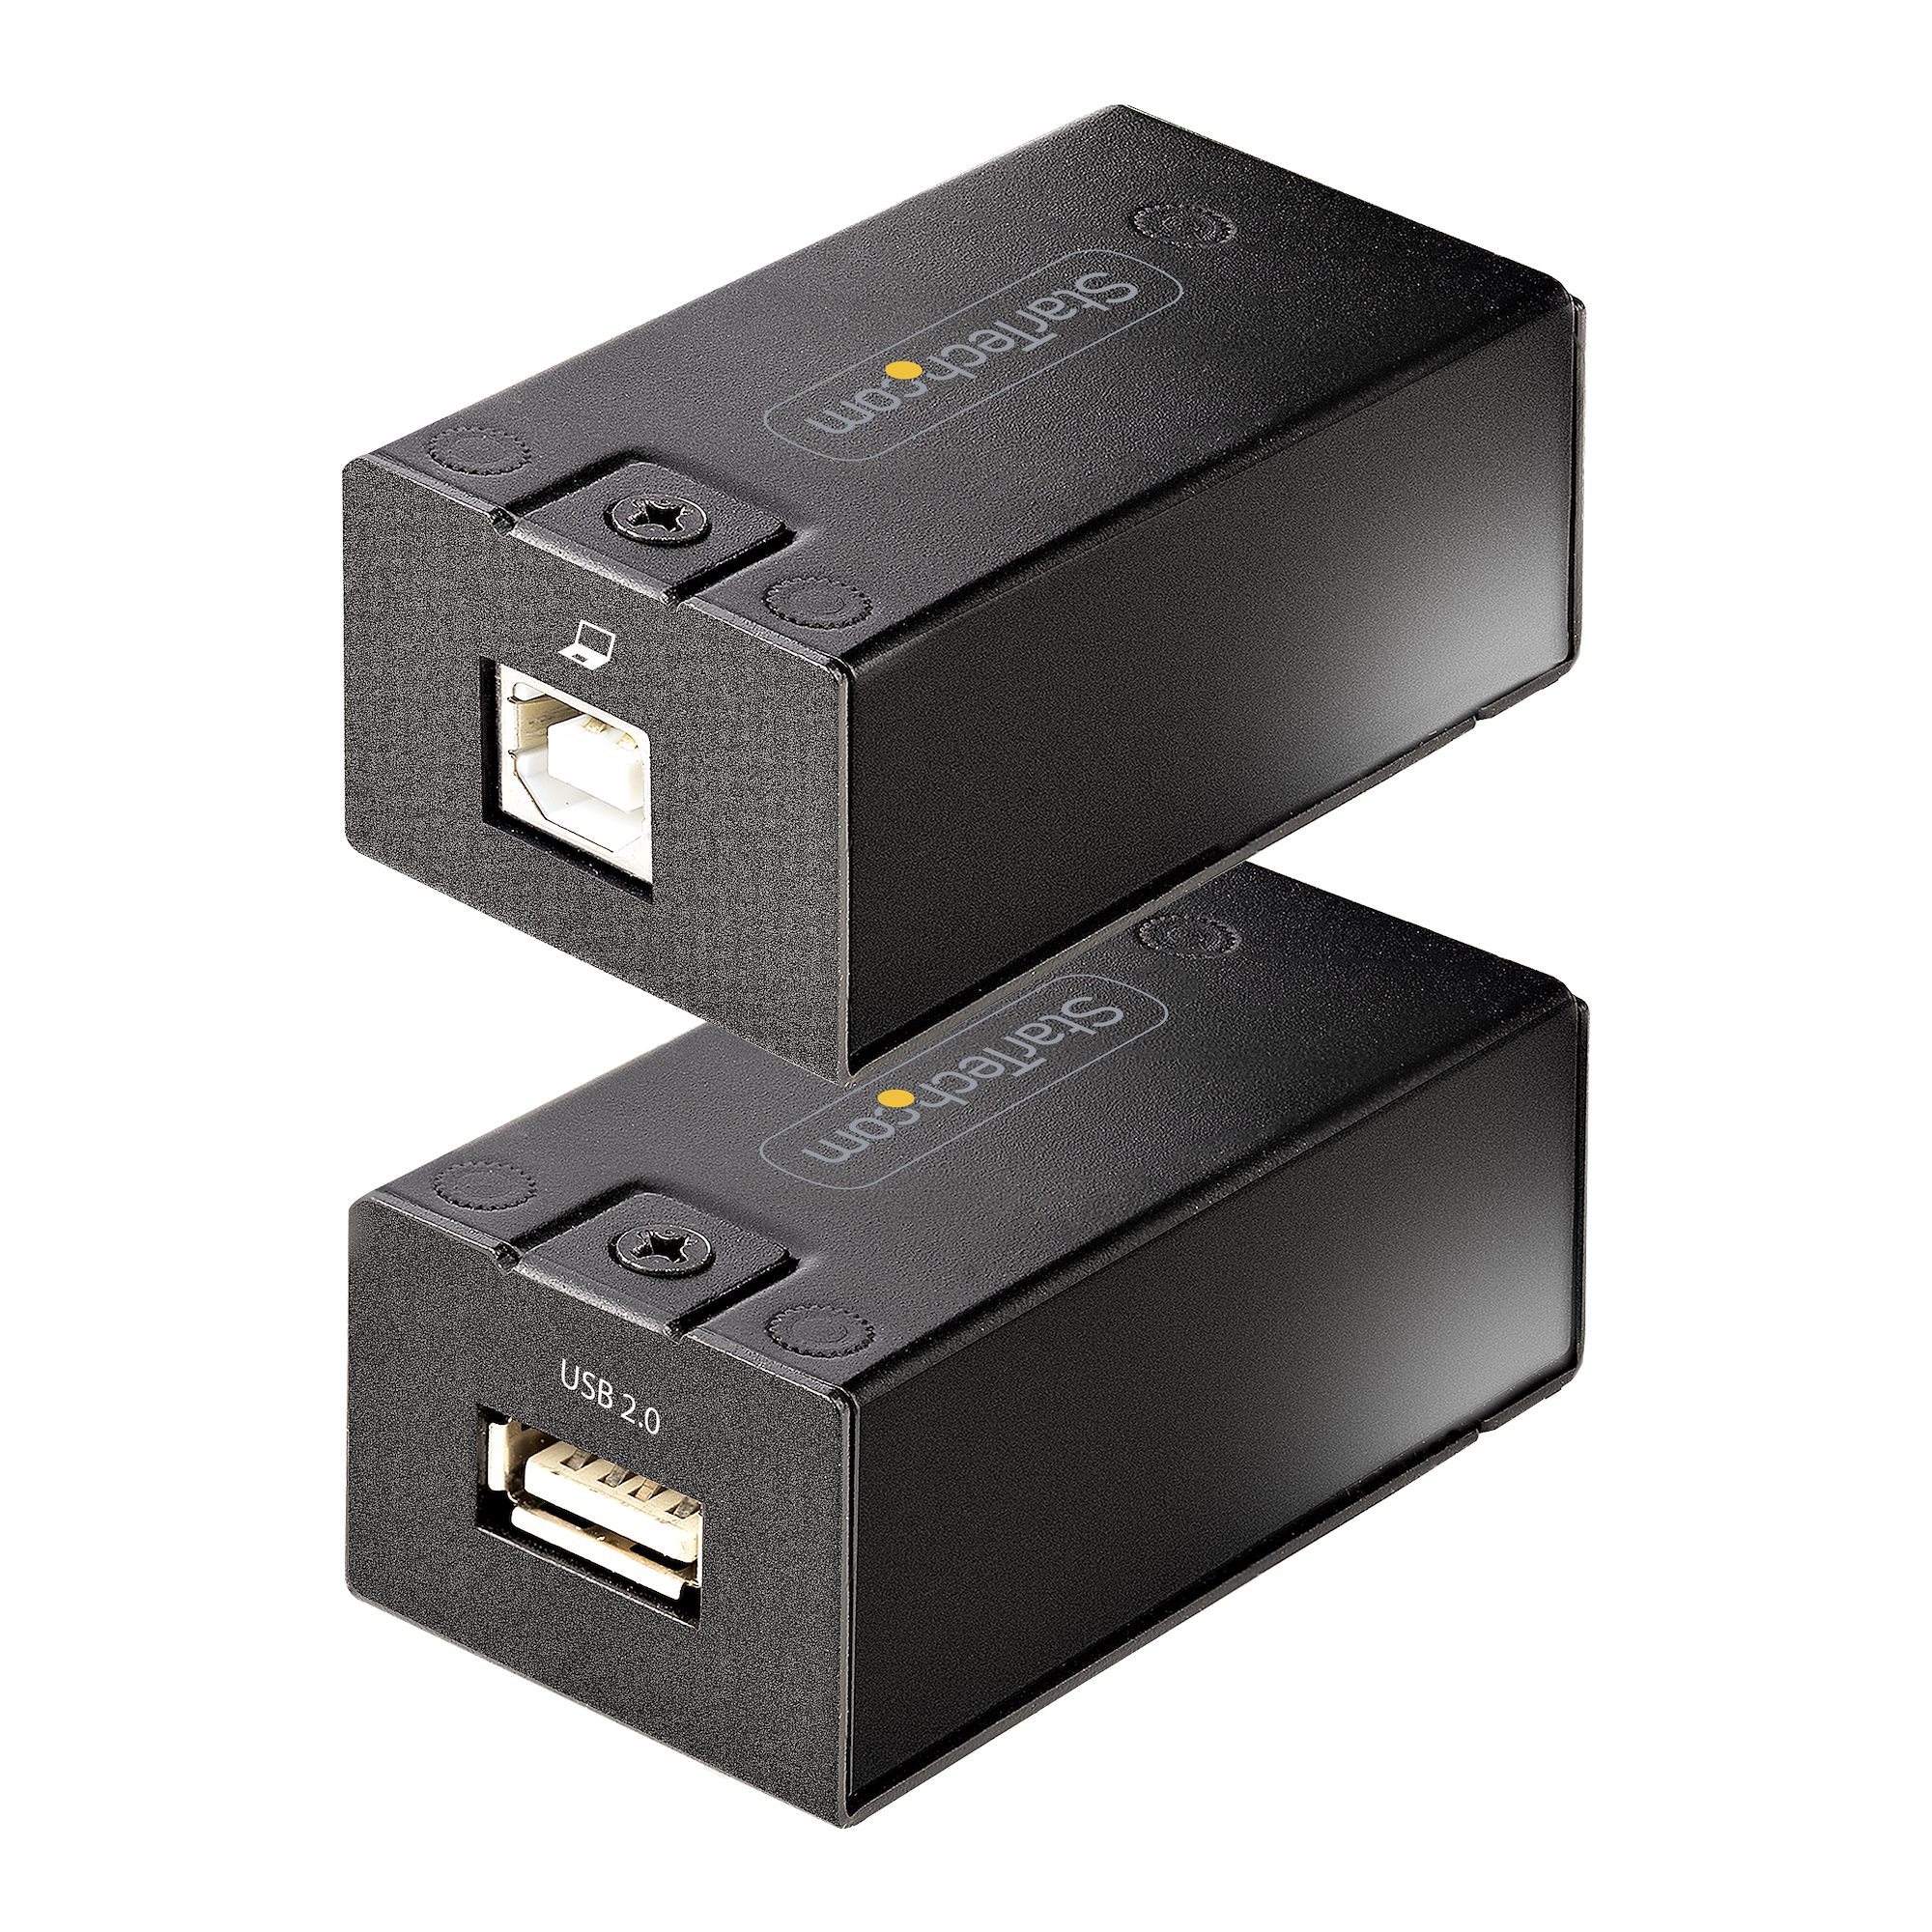 USB2-Mini-S - 4-Port USB 2.0 Extender Over Cat5e/6 up to 150 ft